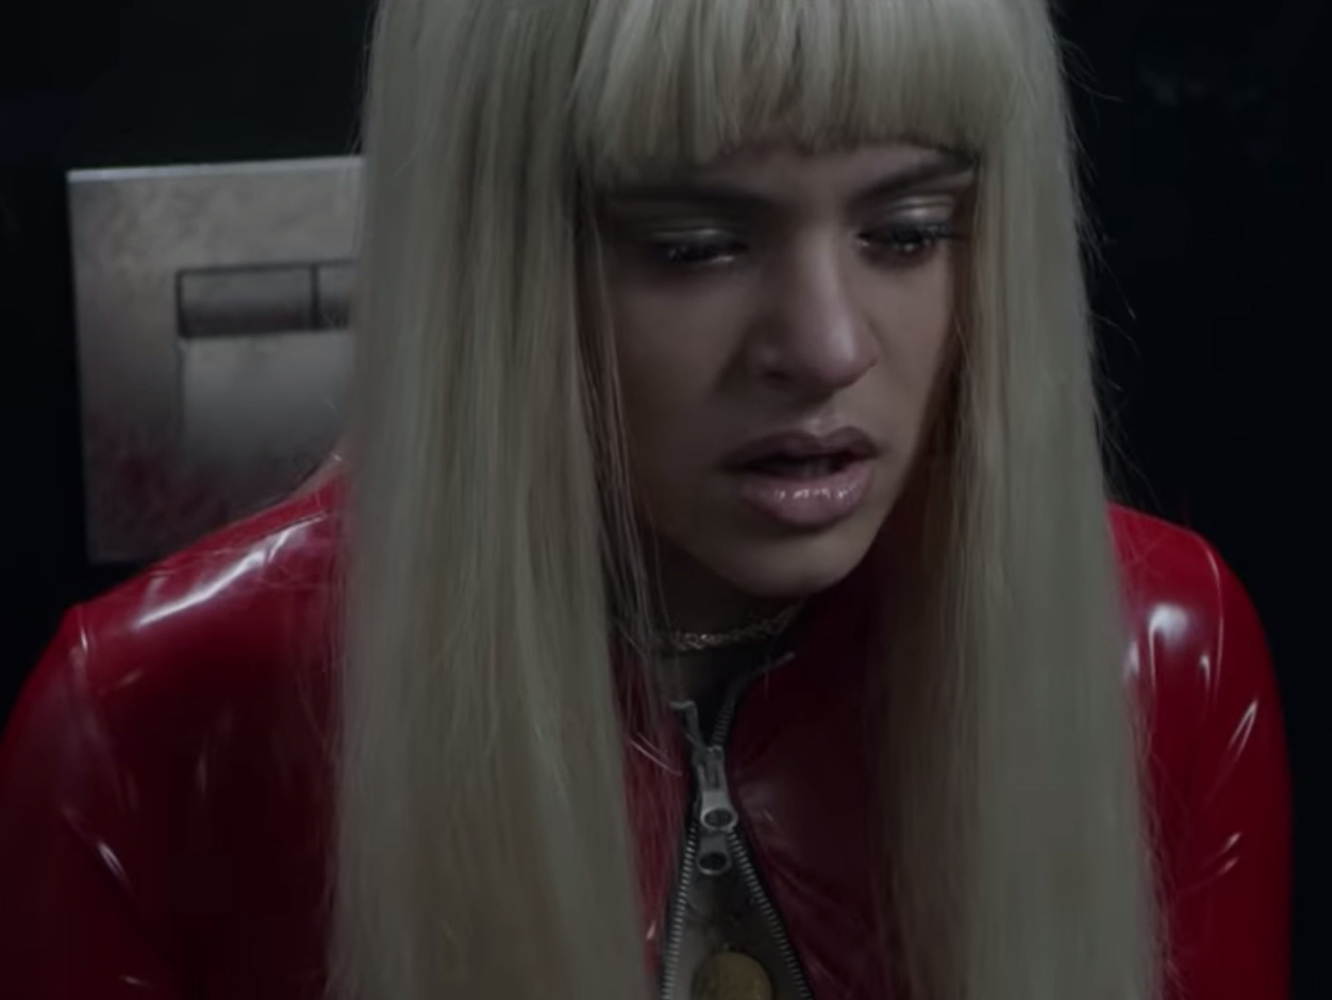  Rosalía referencia a Britney Spears y Justin Timberlake en el vídeo de ‘Badgad’